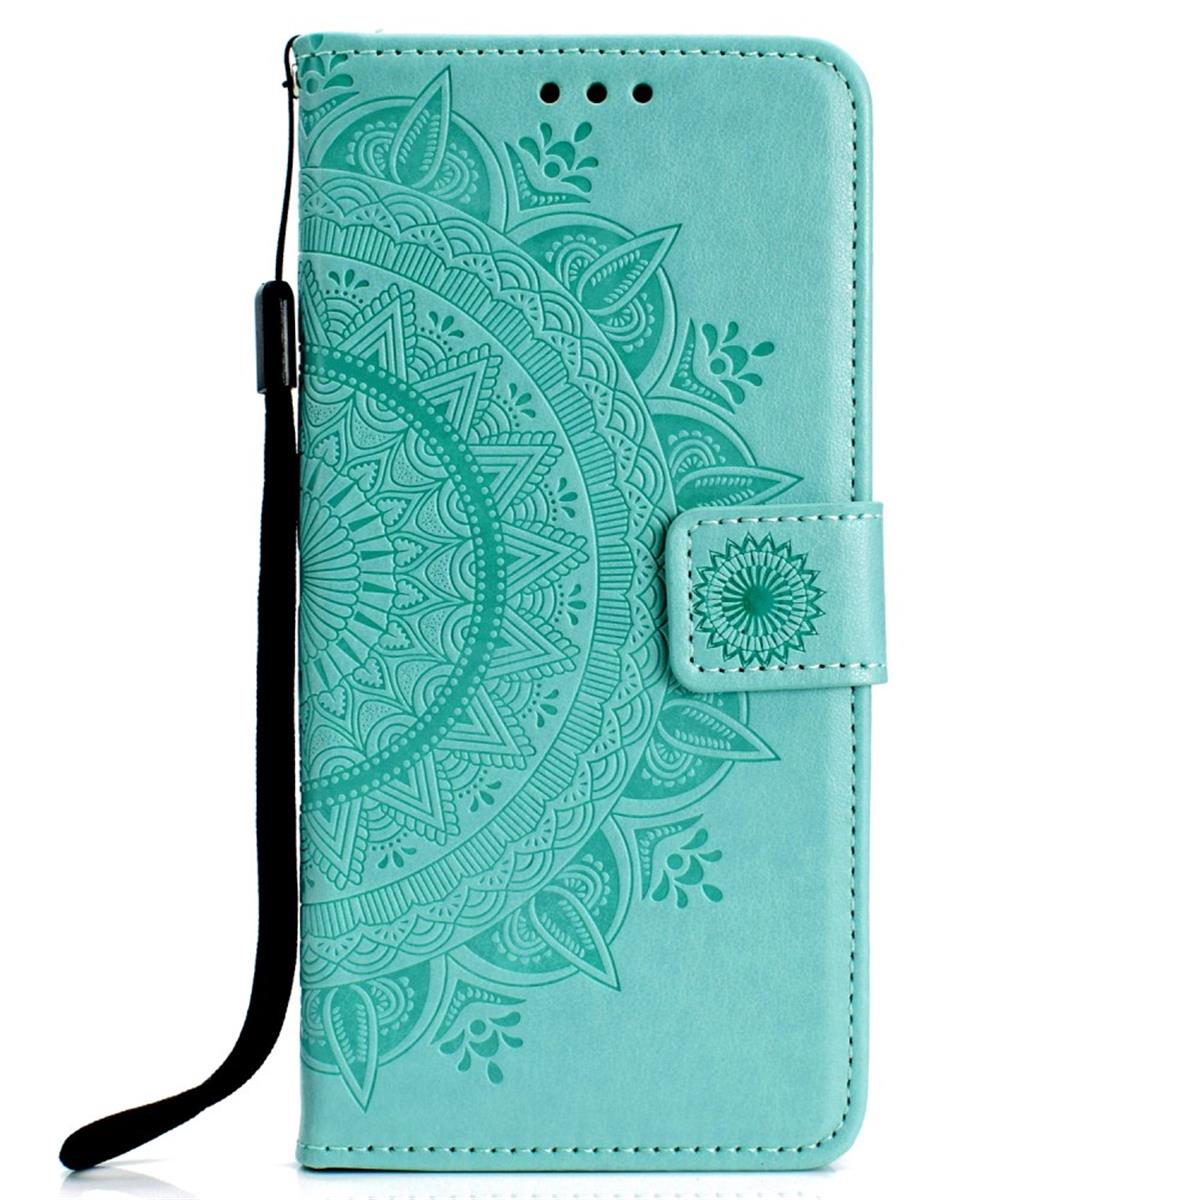 Hülle für Samsung Galaxy A70 Handyhülle Schutz Tasche Case Etui Cover Mandala Grün